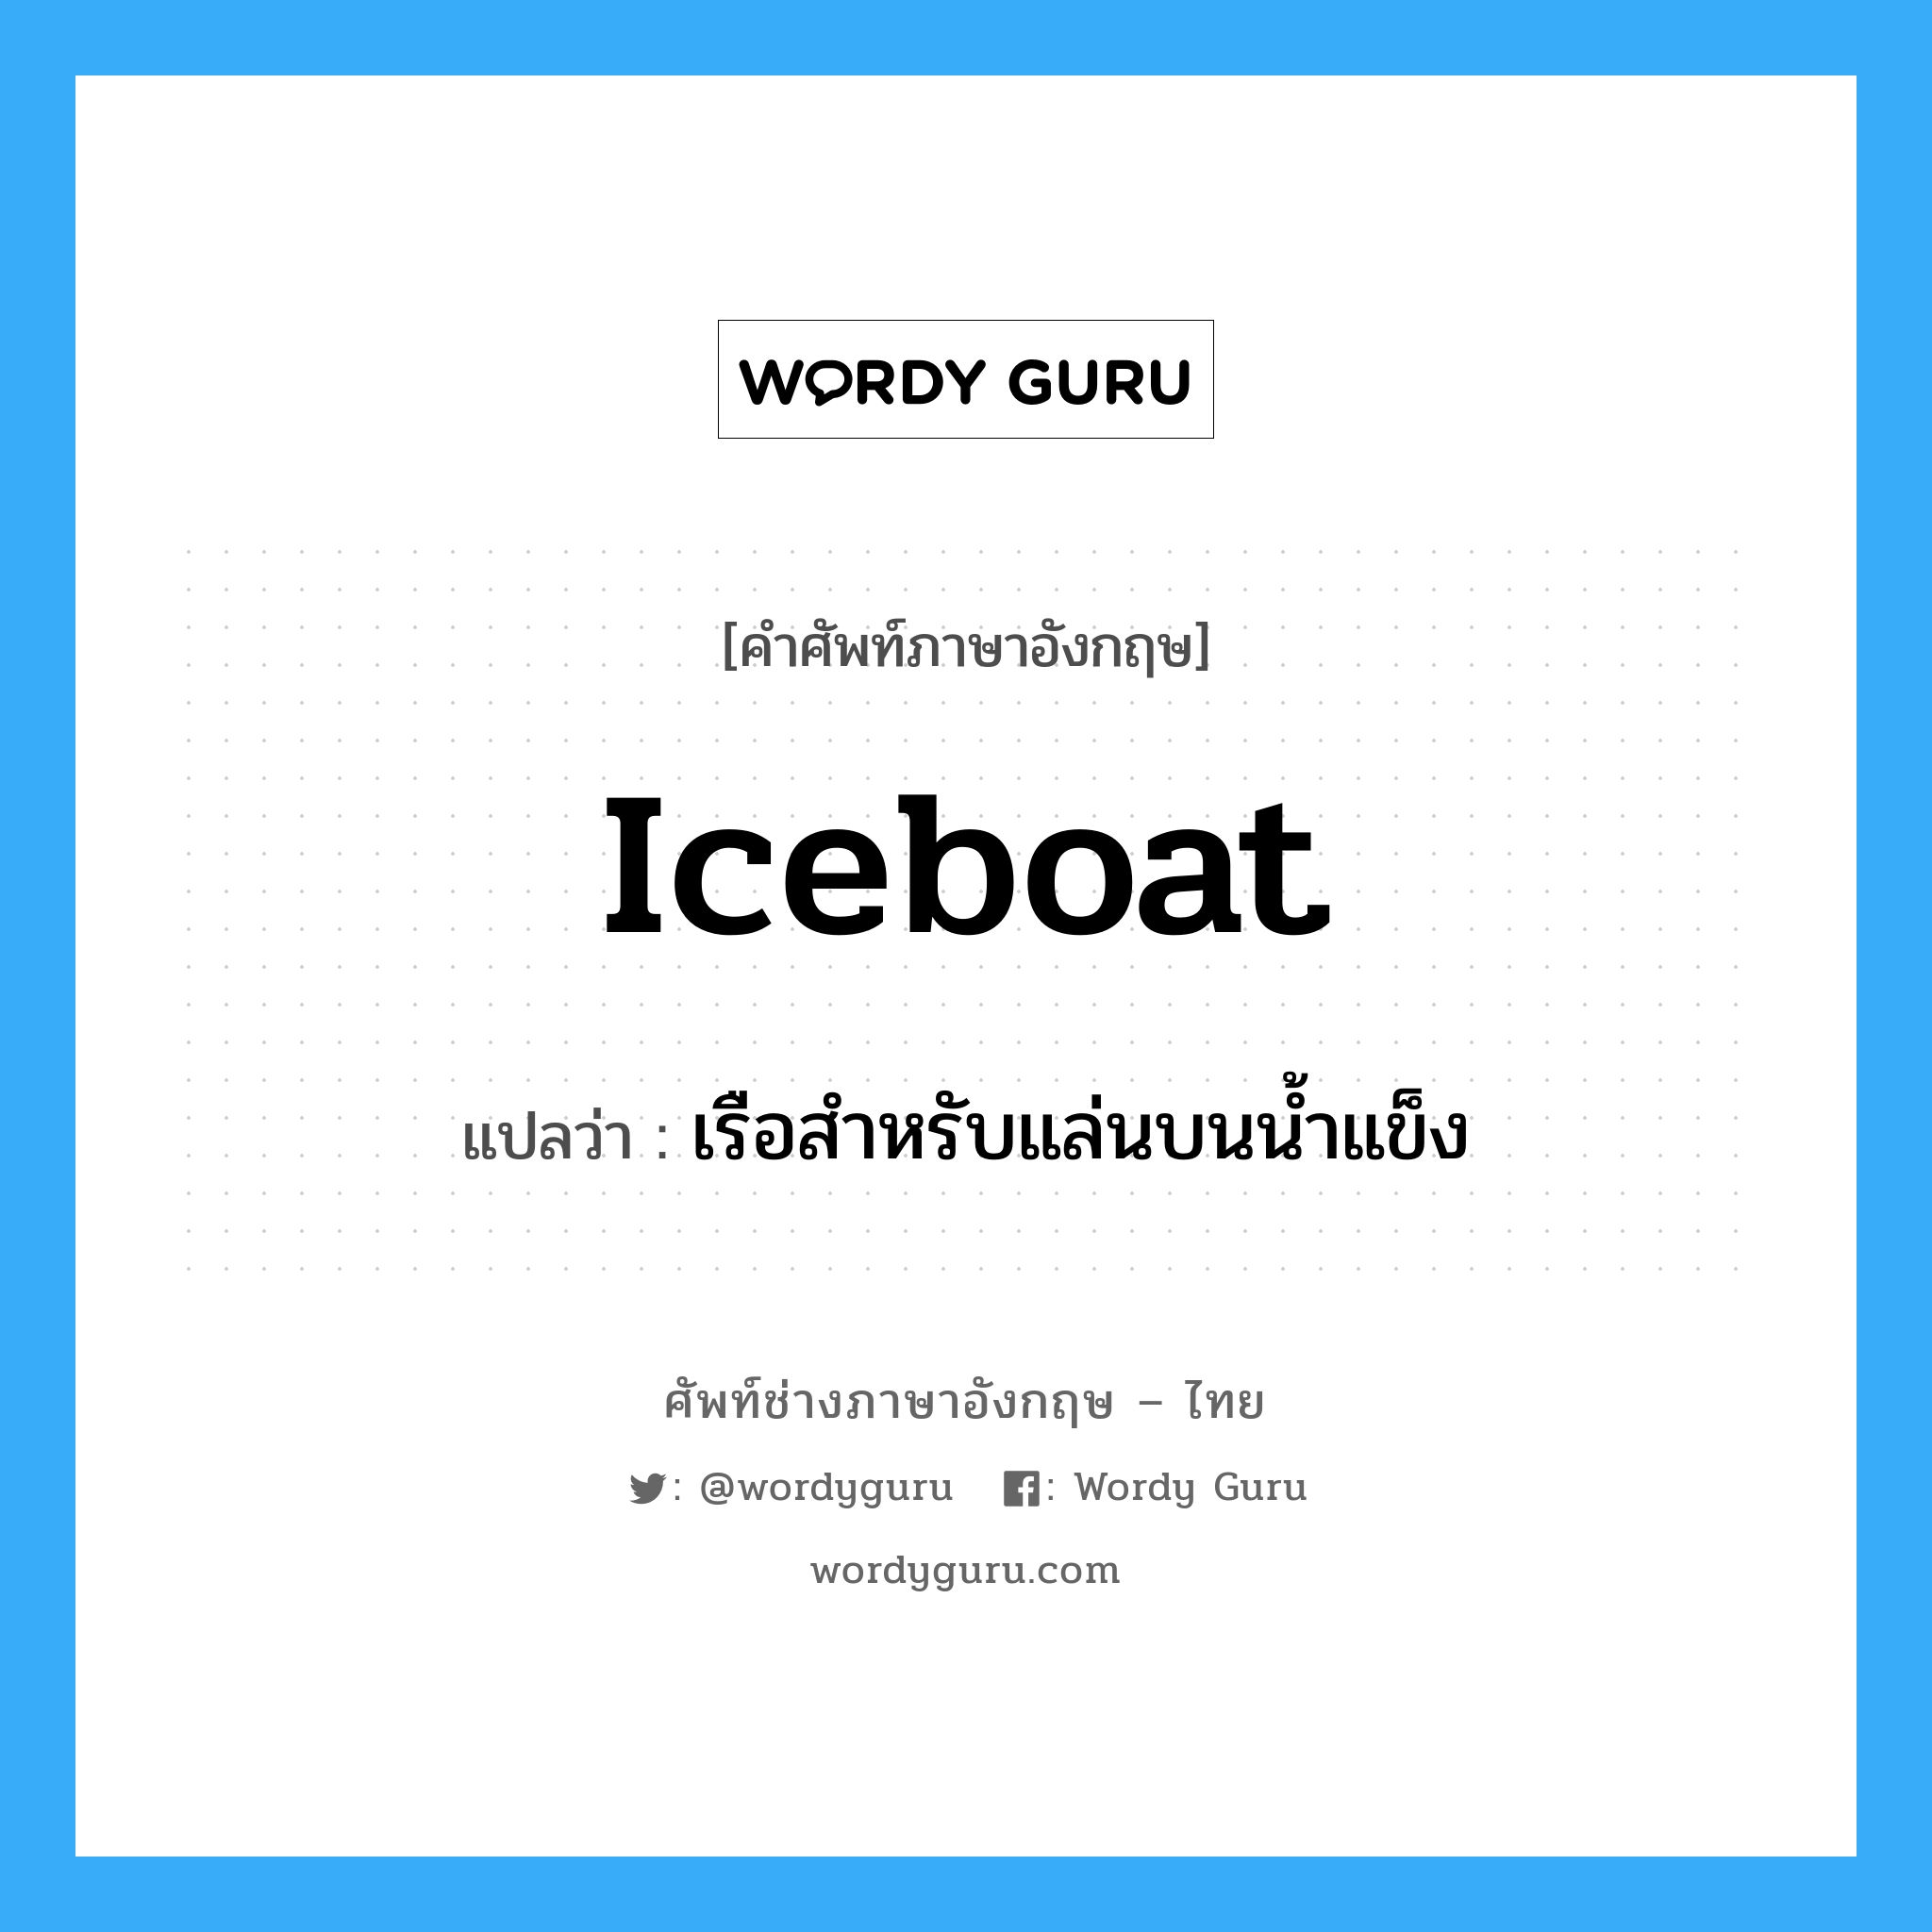 เรือสำหรับแล่นบนน้ำแข็ง ภาษาอังกฤษ?, คำศัพท์ช่างภาษาอังกฤษ - ไทย เรือสำหรับแล่นบนน้ำแข็ง คำศัพท์ภาษาอังกฤษ เรือสำหรับแล่นบนน้ำแข็ง แปลว่า iceboat